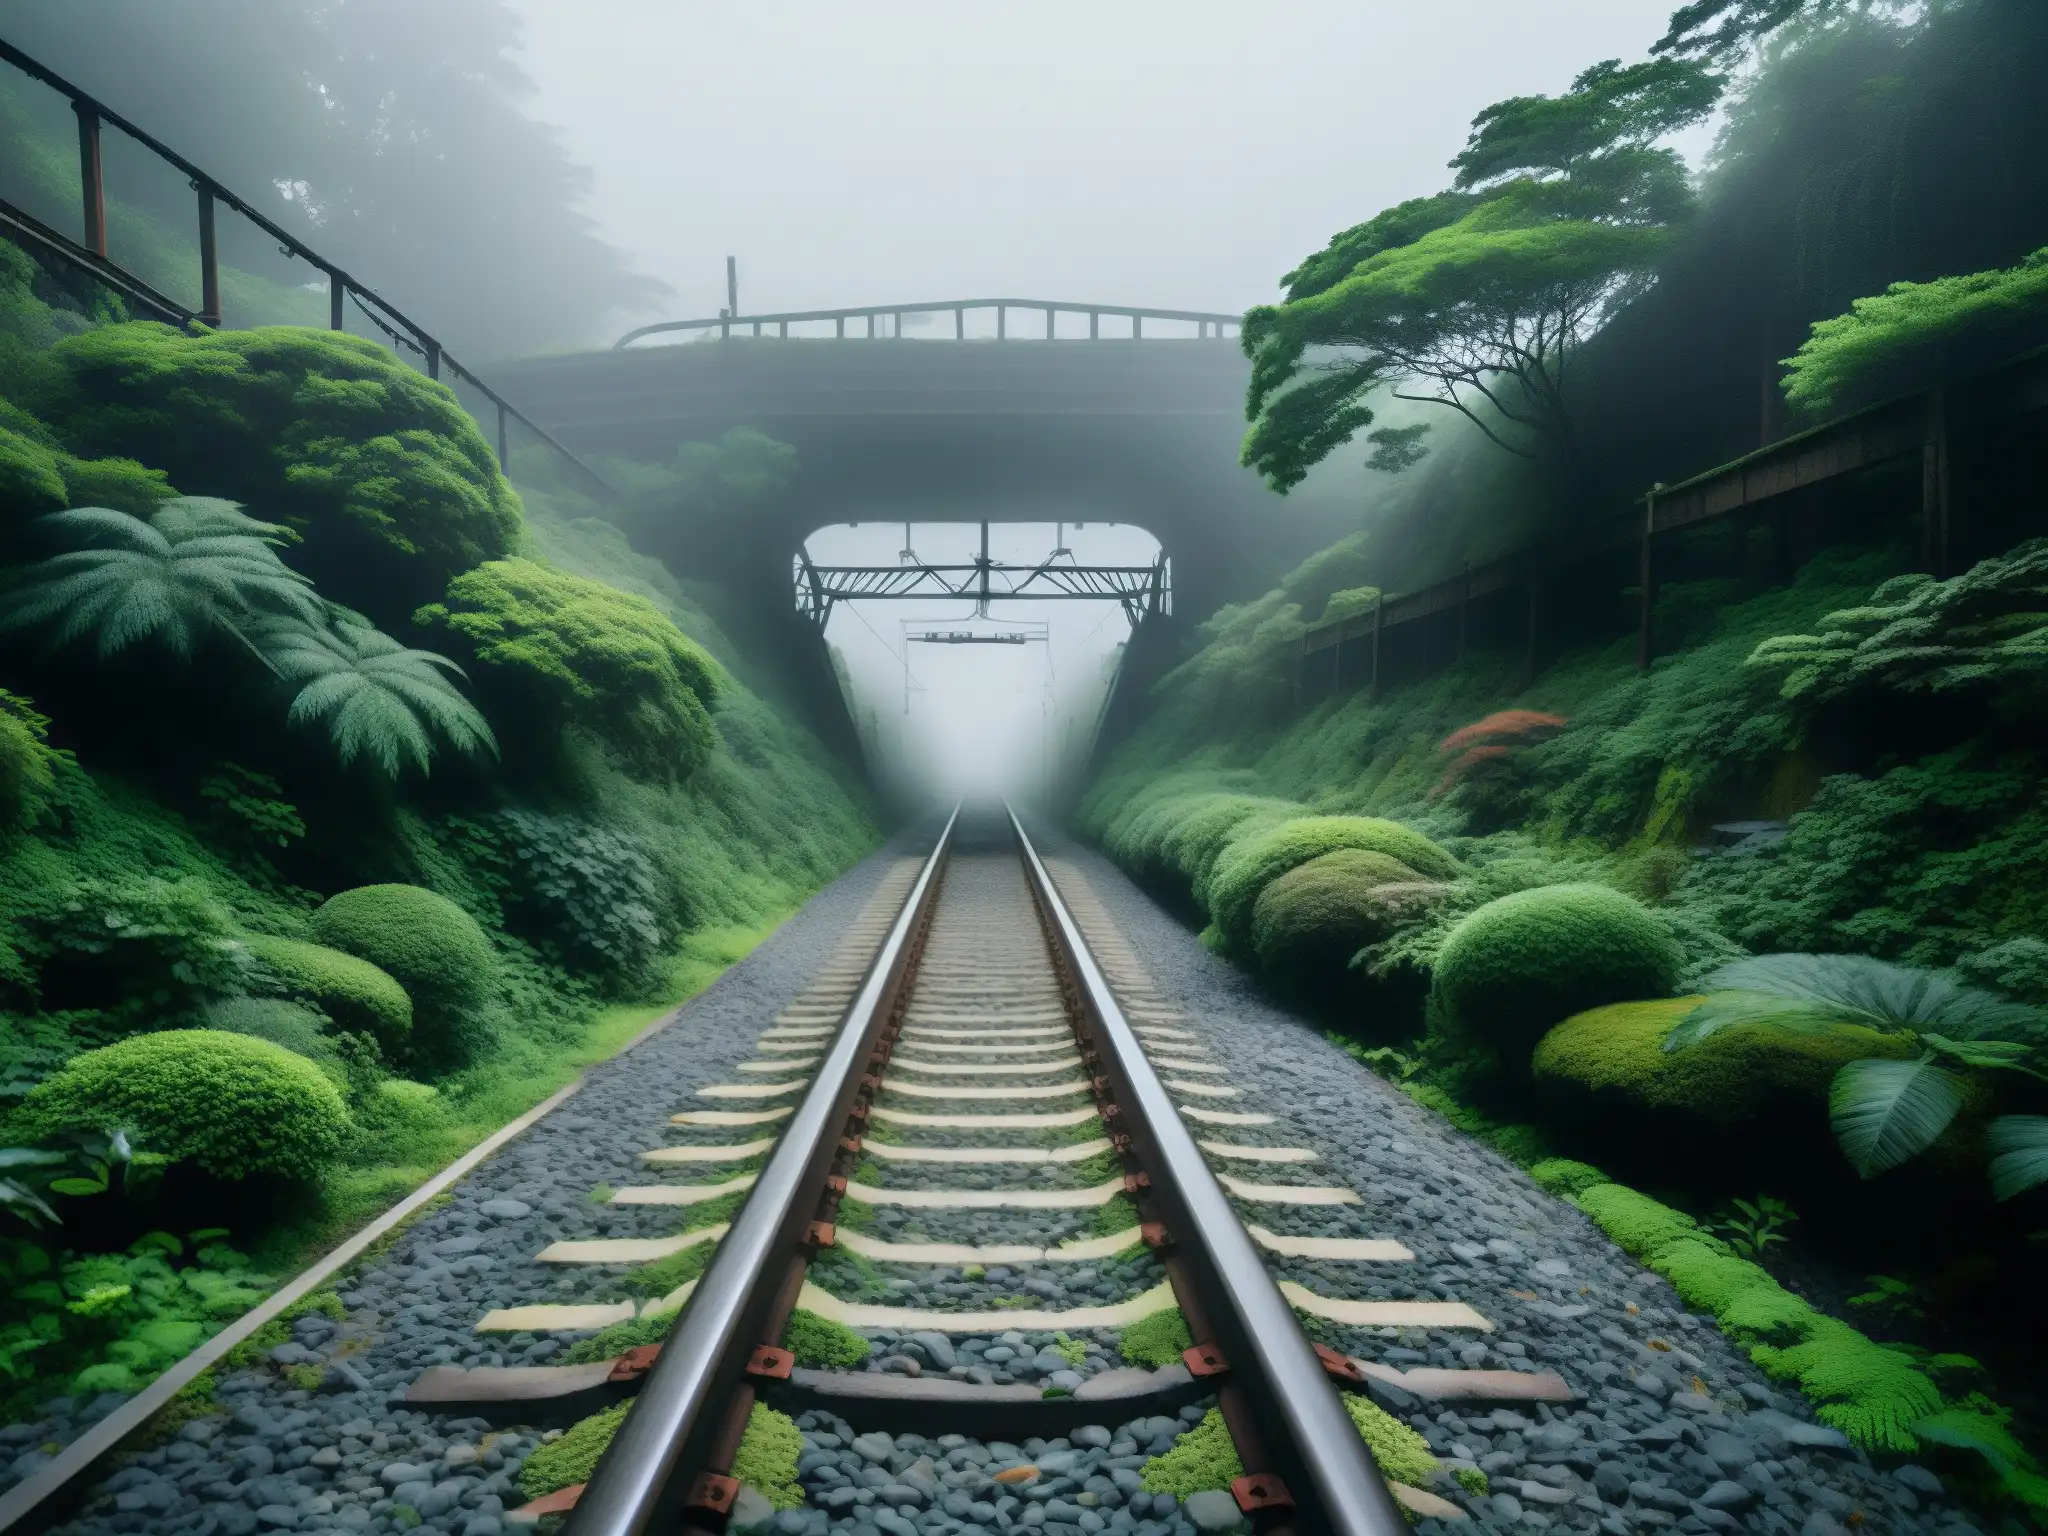 Imagen documental del legendario Tren Fantasma en Japón, con vías abandonadas y enredadas en la niebla, evocando su misterio y atmósfera única